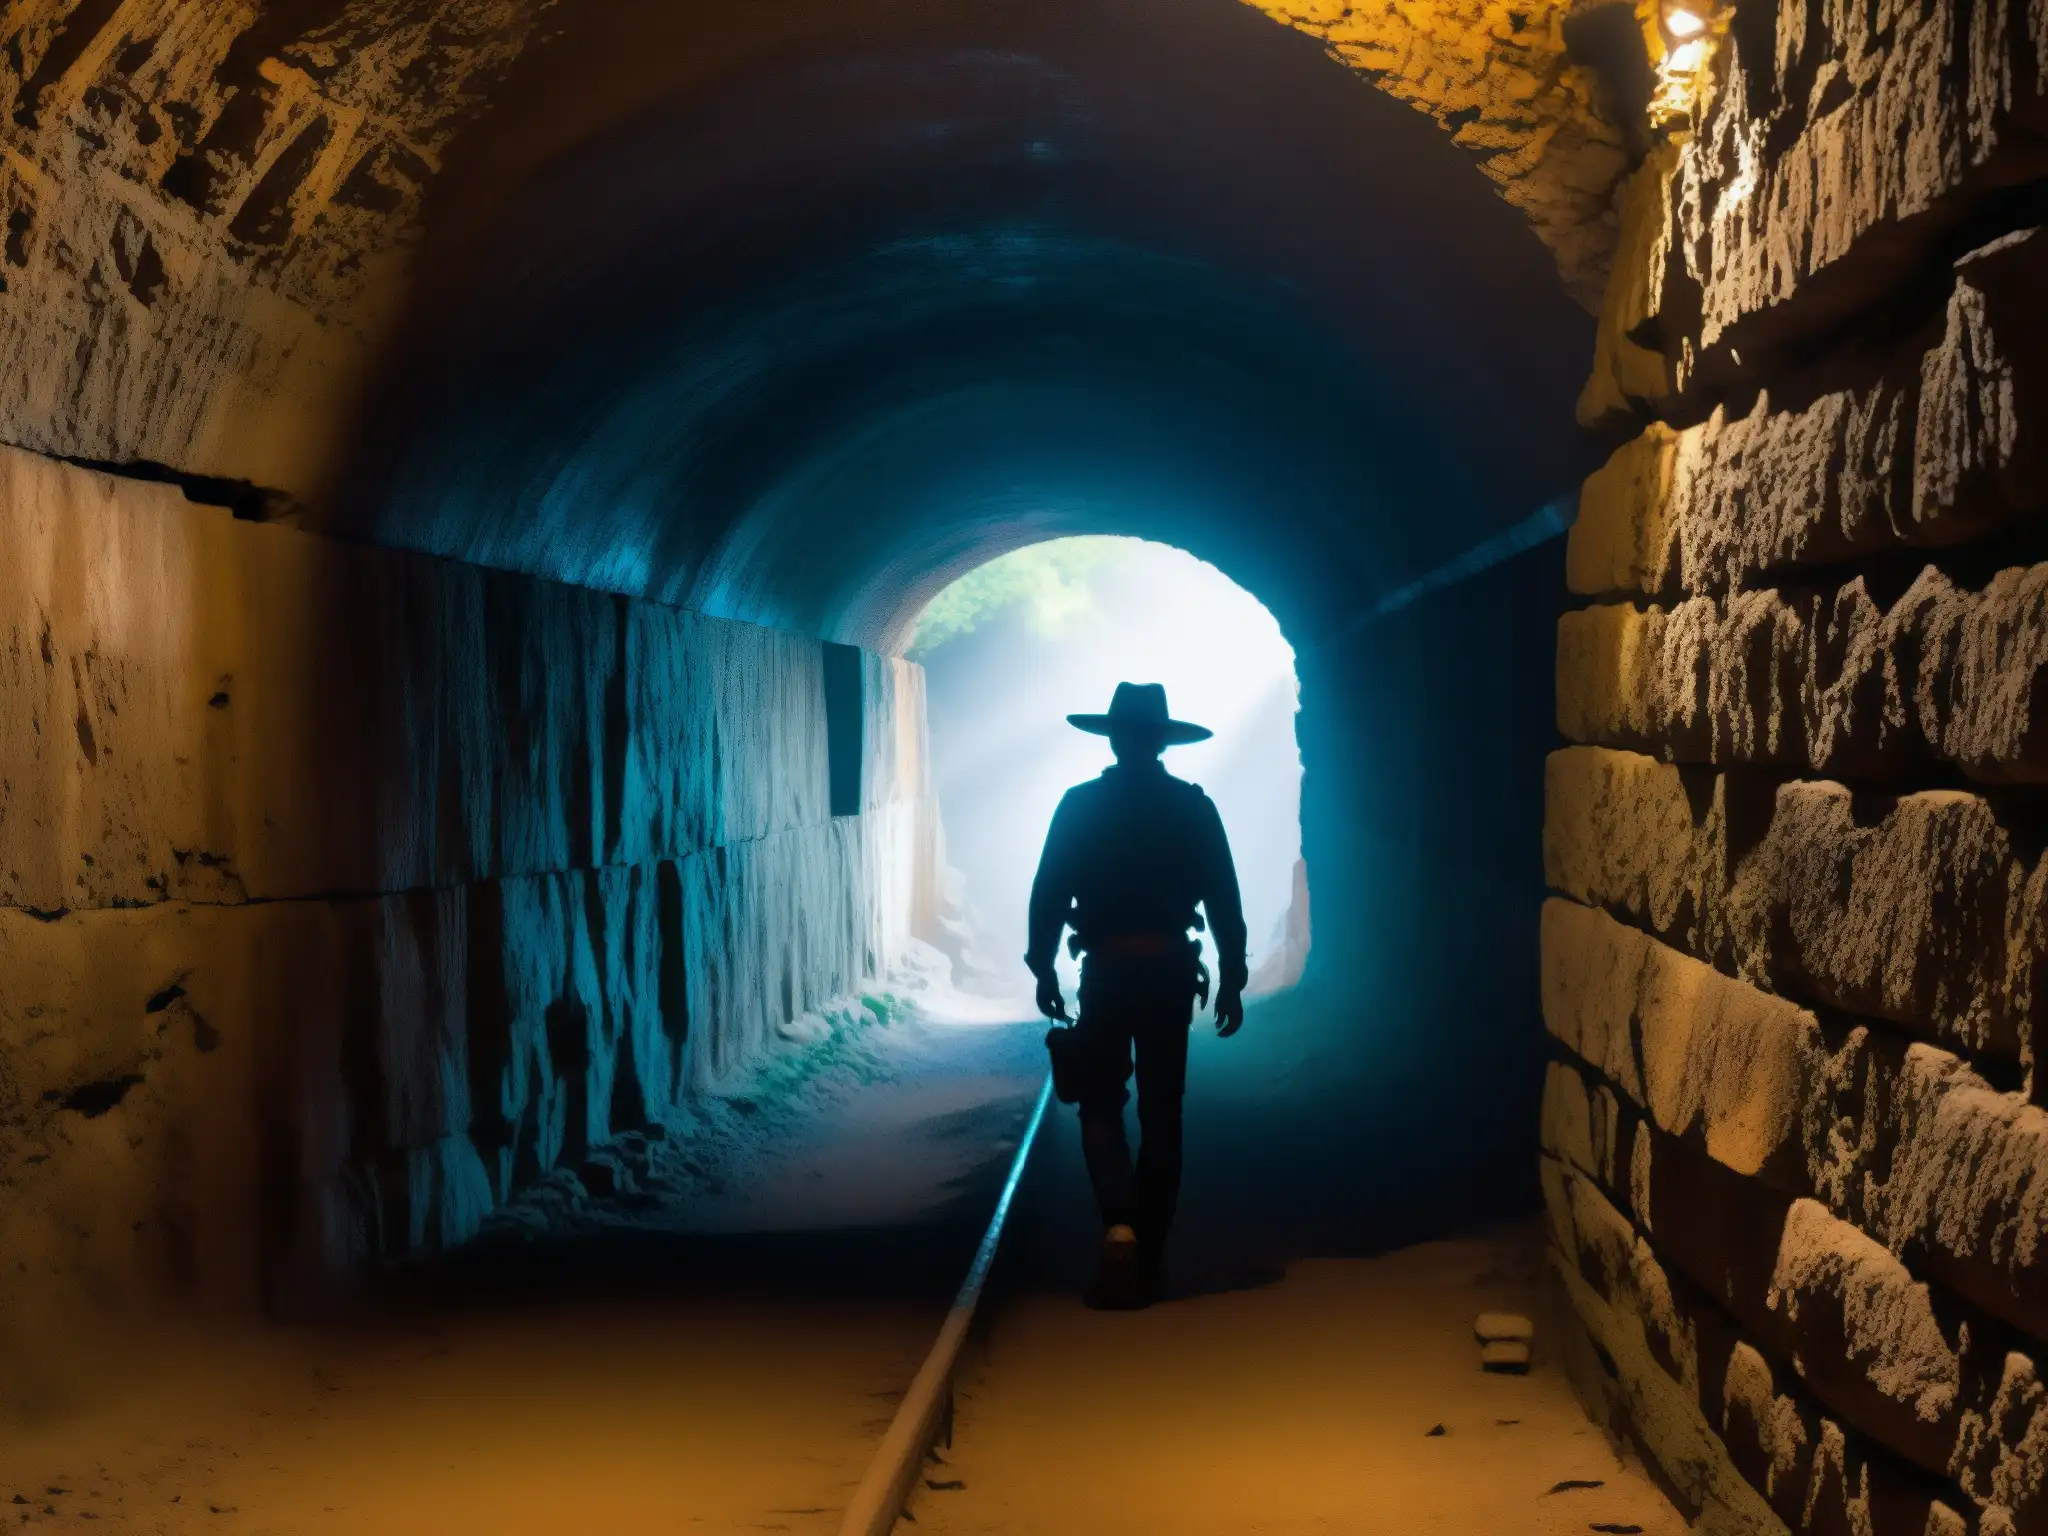 Exploración en el túnel subterráneo de México con sombras misteriosas y tenues destellos de luz